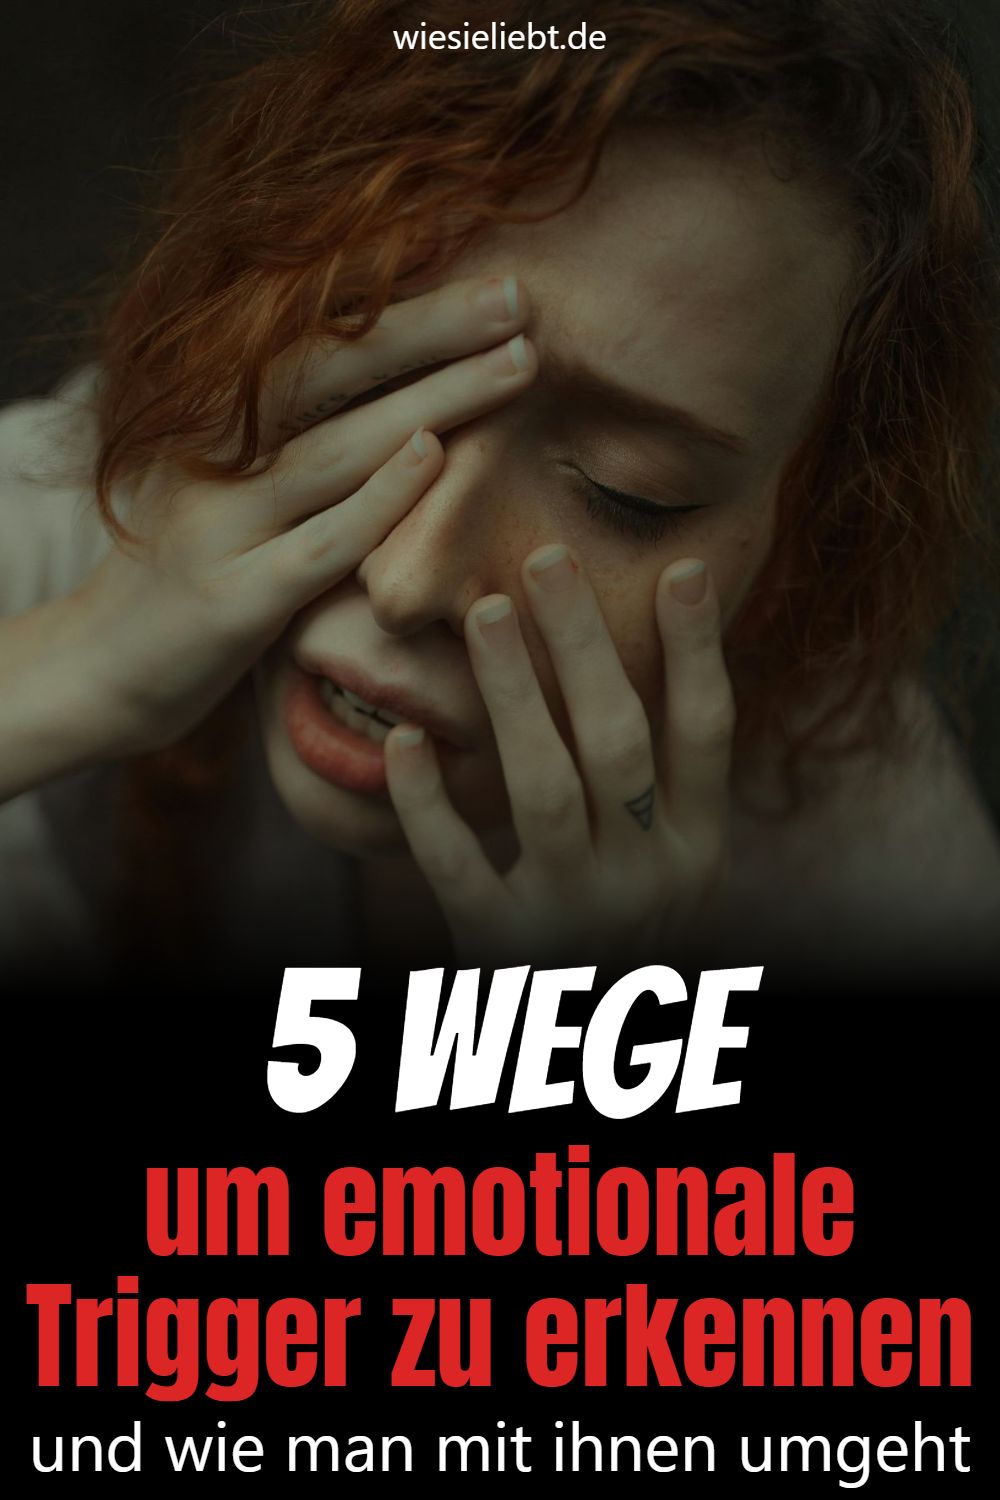 5 Wege um emotionale Trigger zu erkennen und wie man mit ihnen umgeht